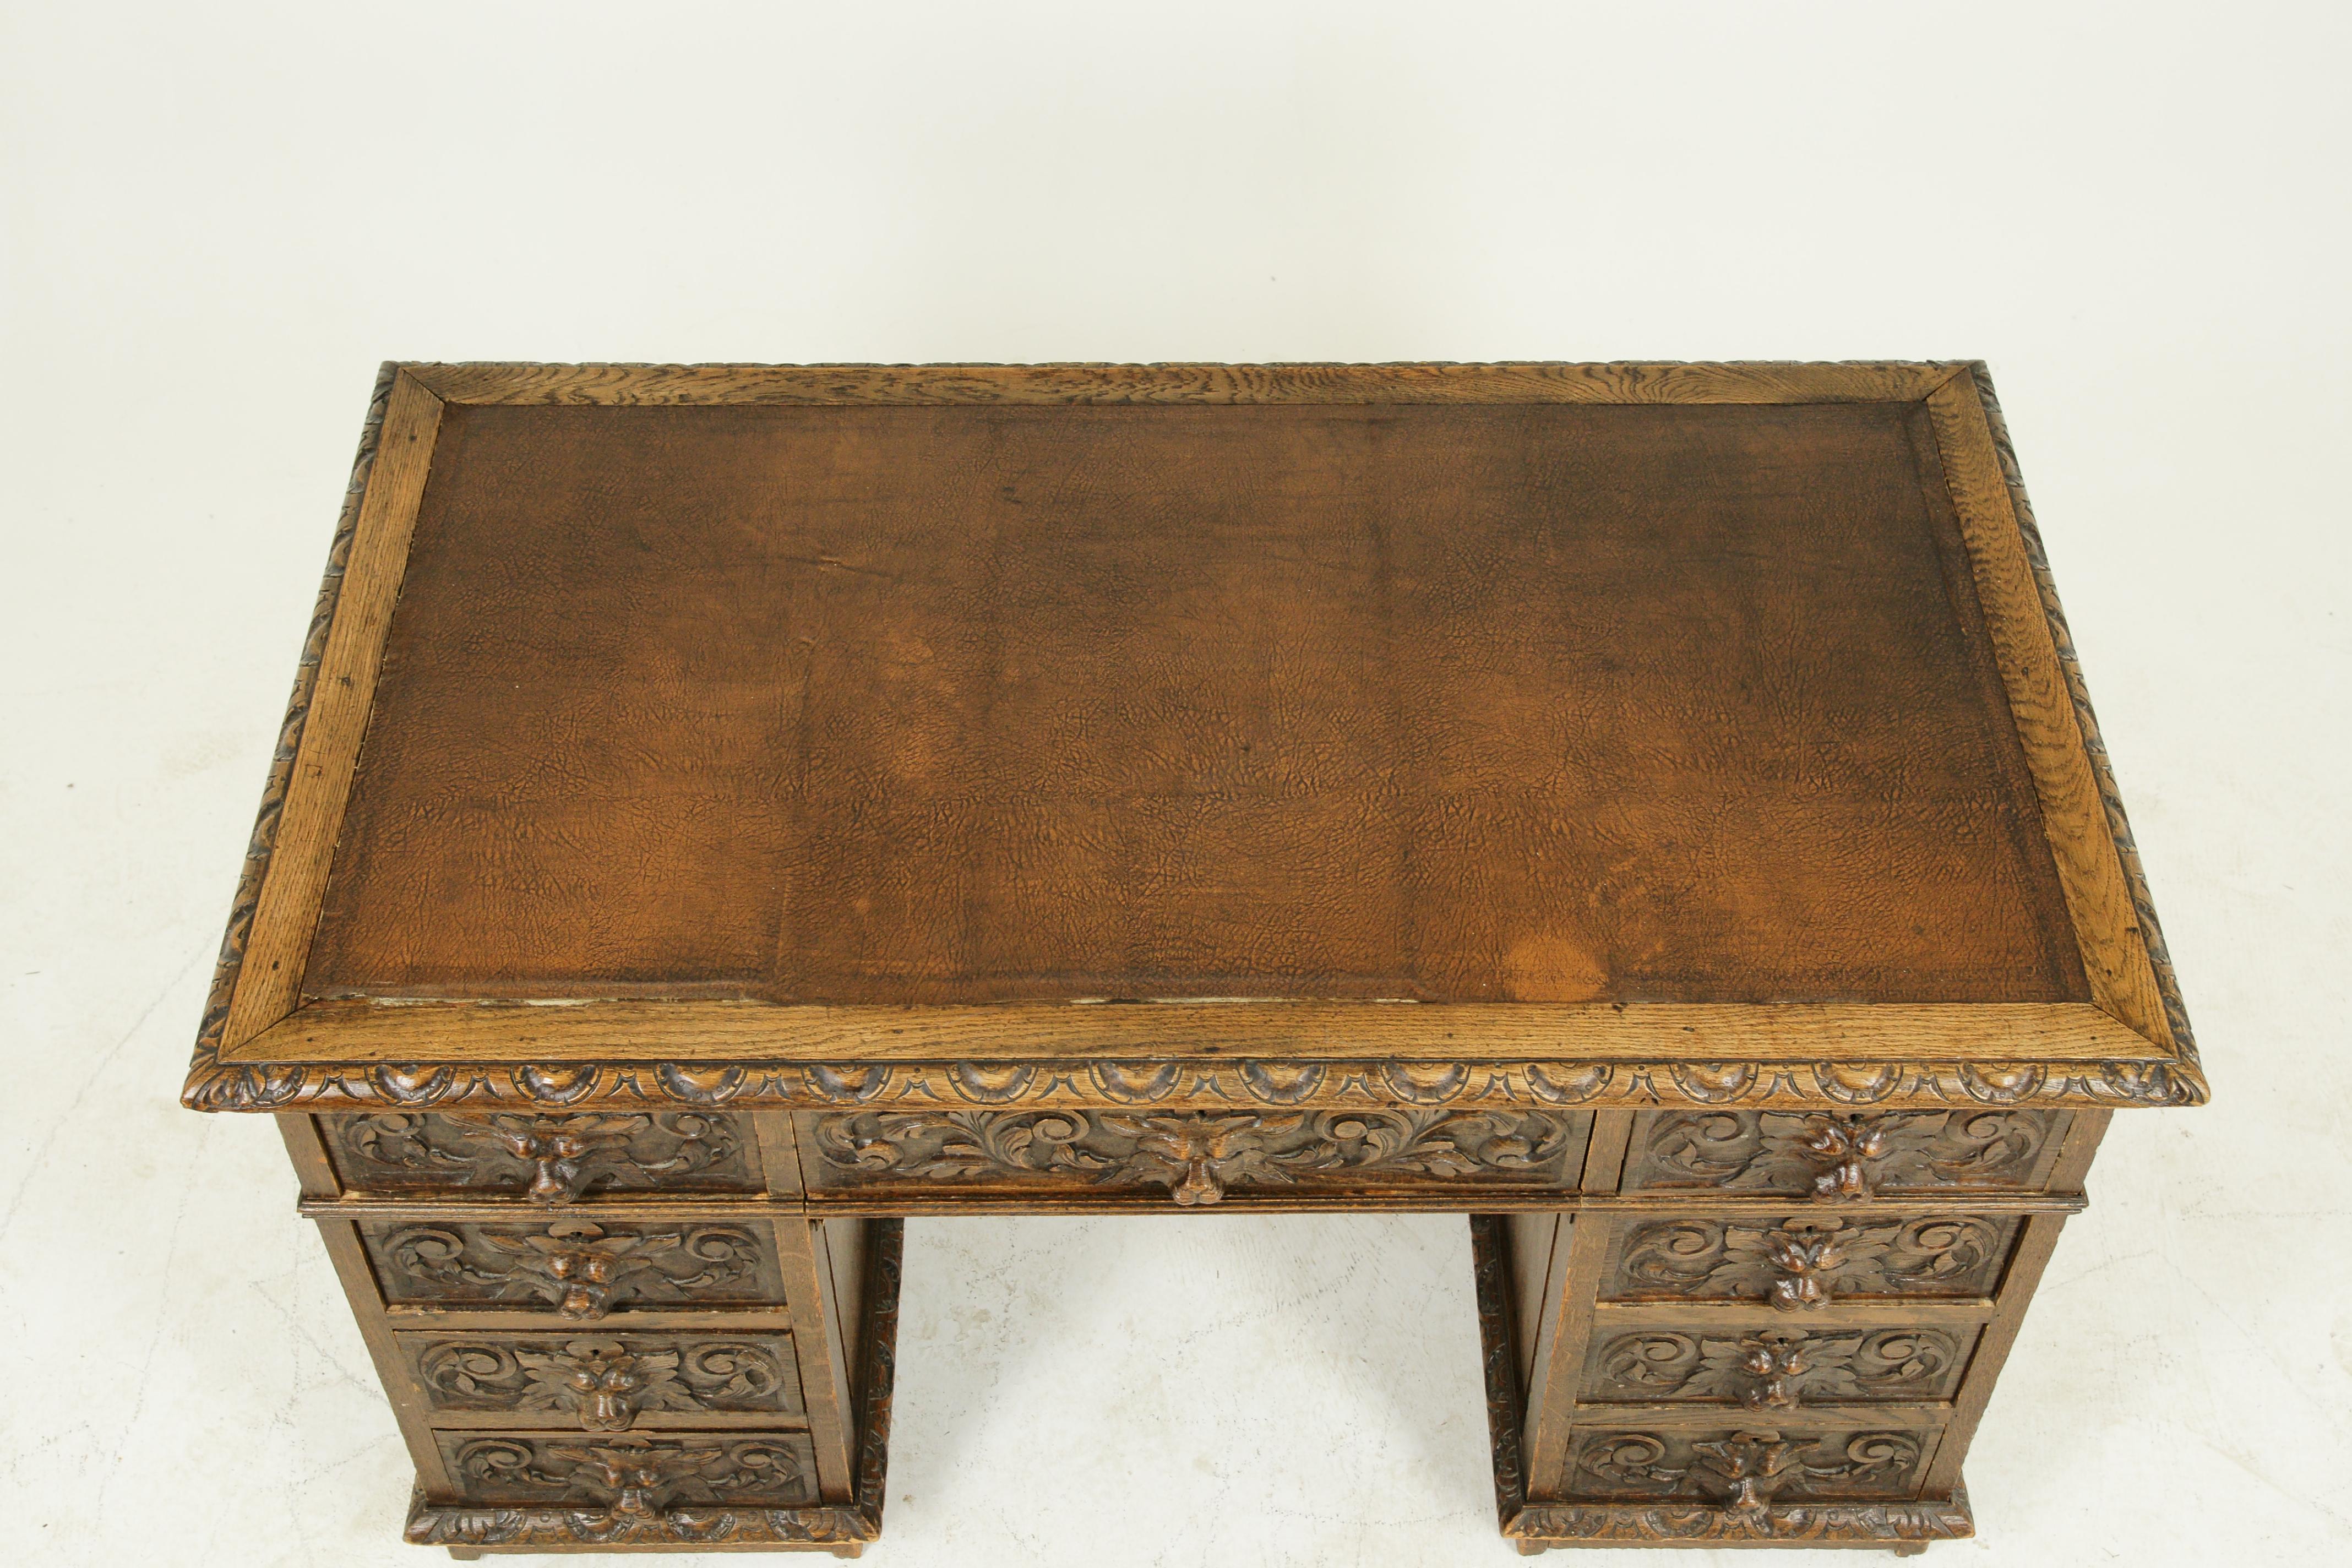 Hand-Carved Antique Carved Desk, Double Pedestal Desk, 